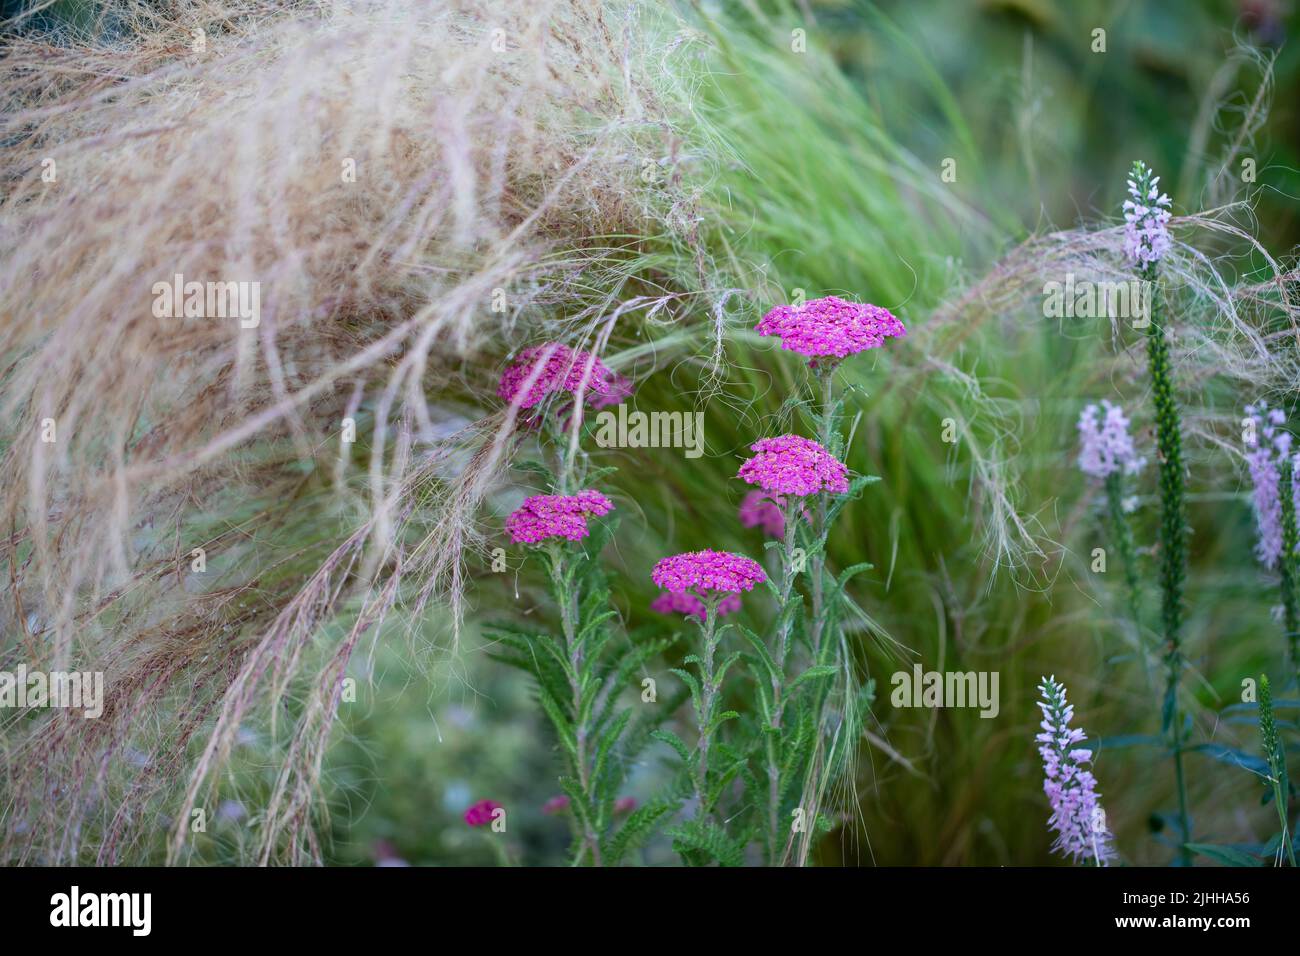 Borde floral con Achillea millefolium en el jardín, poca profundidad de campo Foto de stock